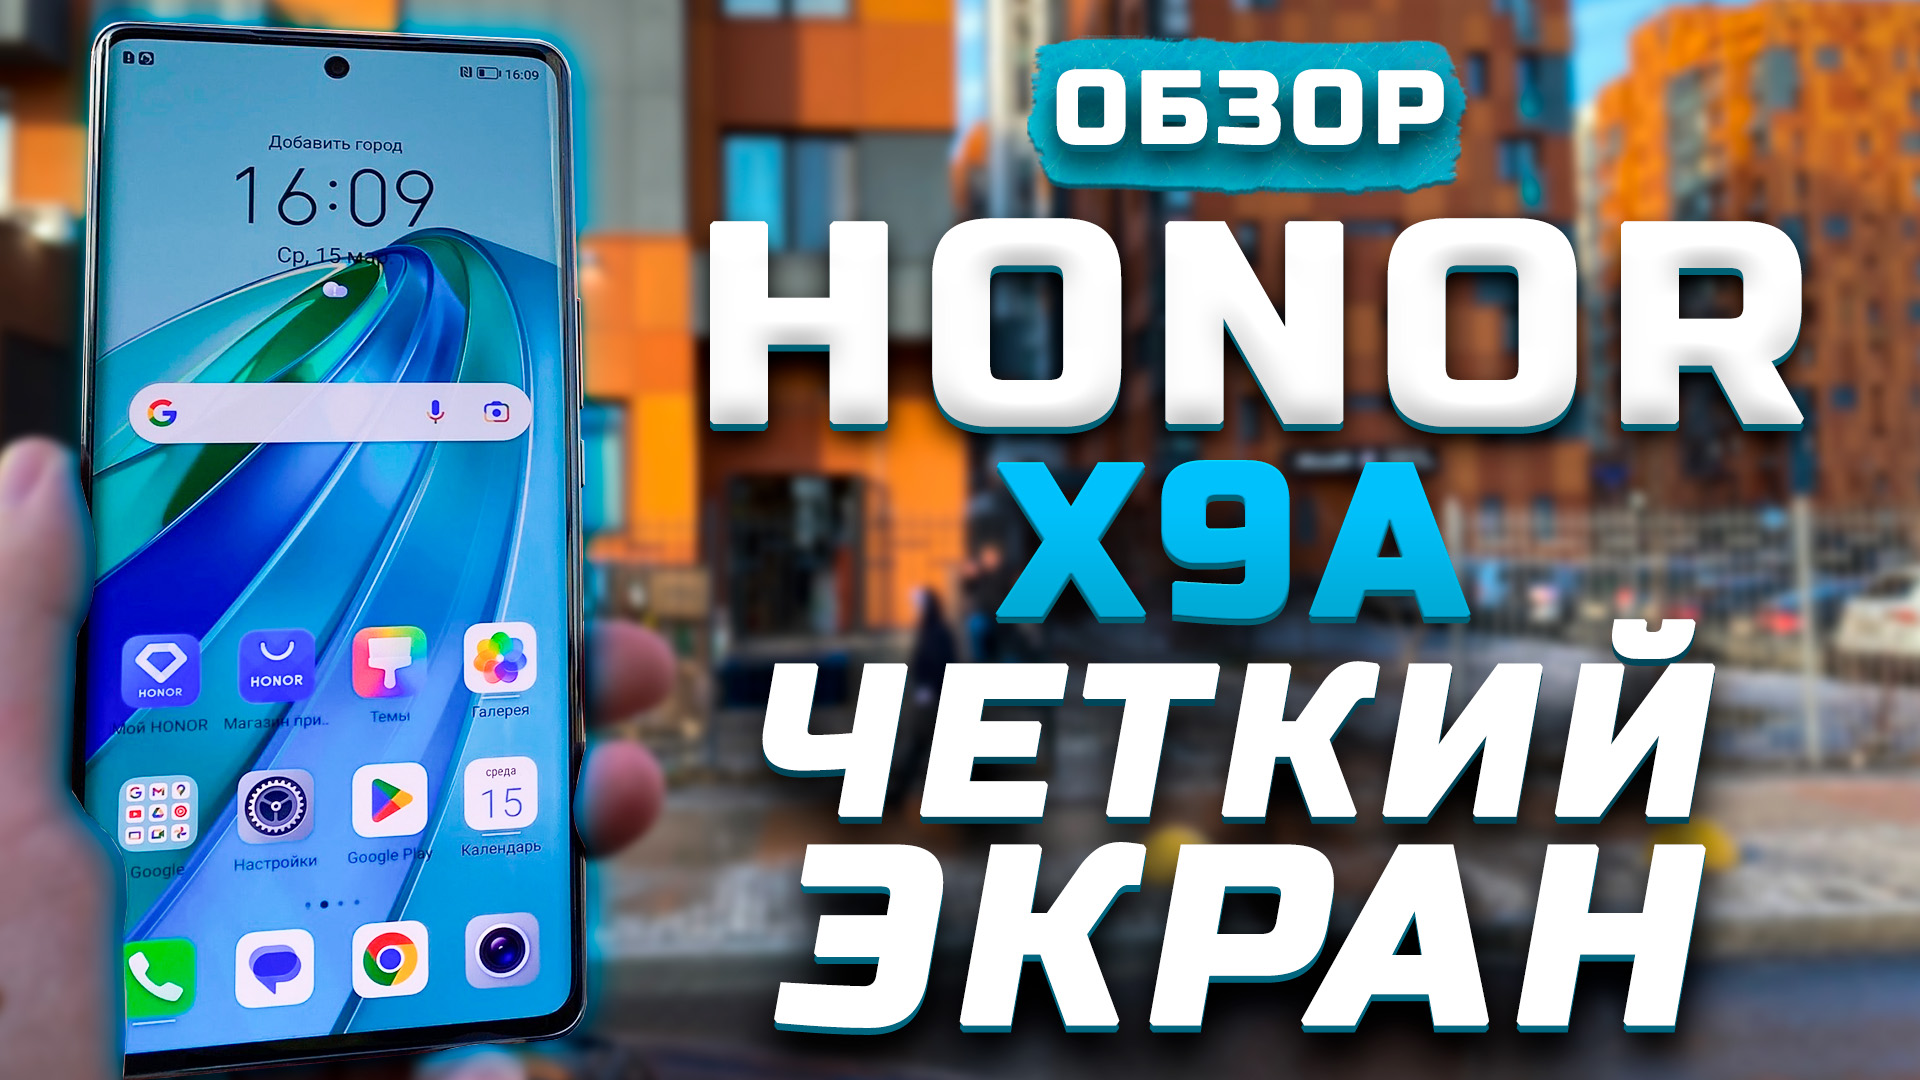 Обзор Honor X9a | Тест телефона в 10 играх ► Четкий экран!